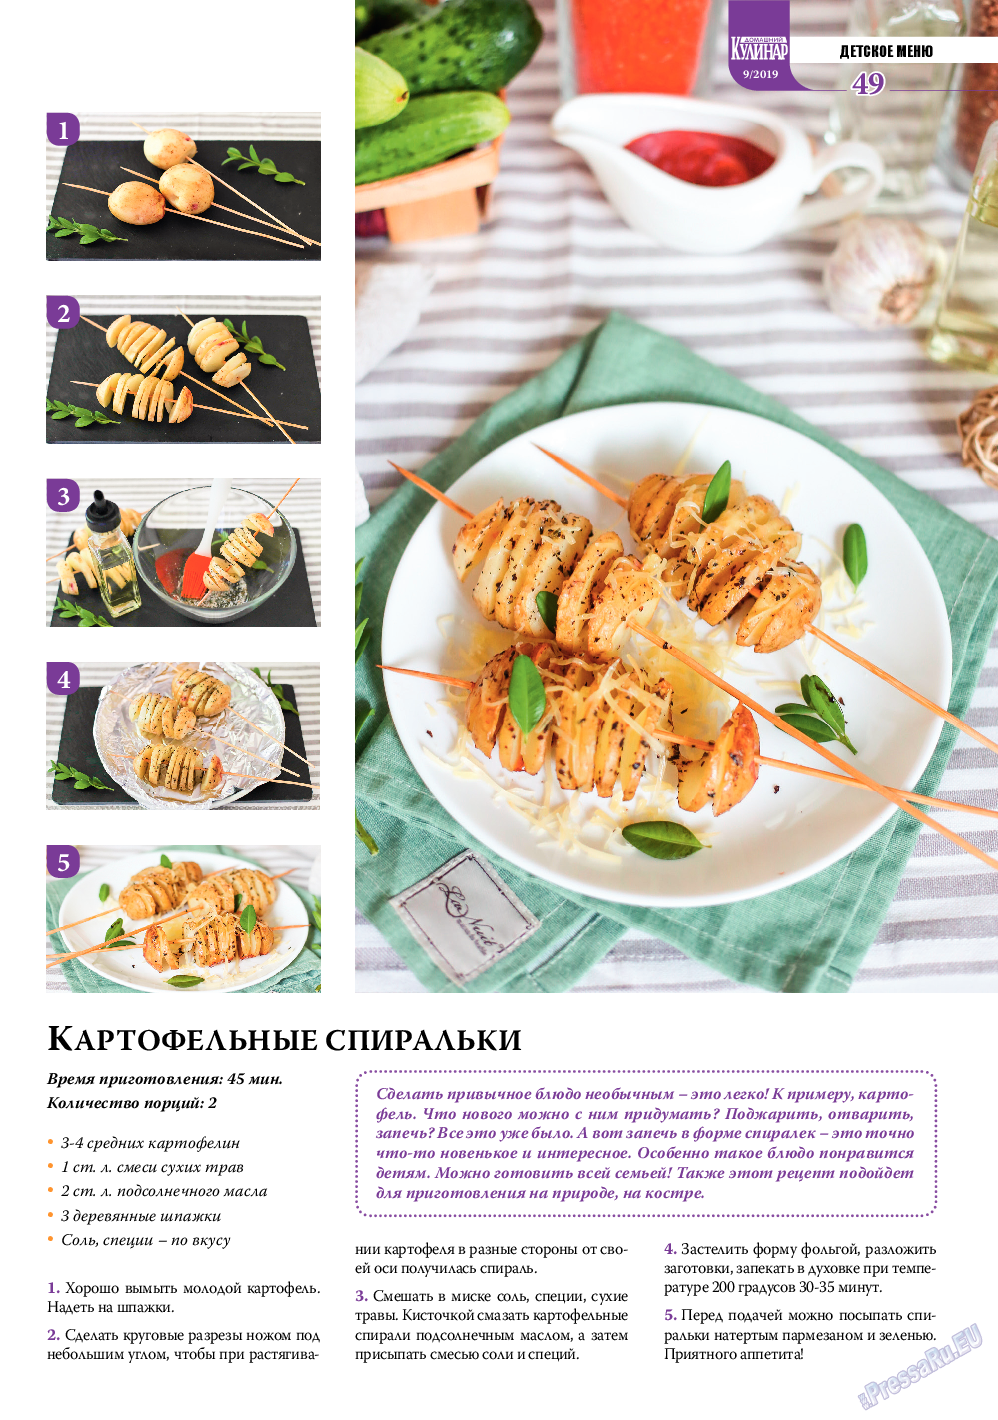 Домашний кулинар, журнал. 2019 №9 стр.49